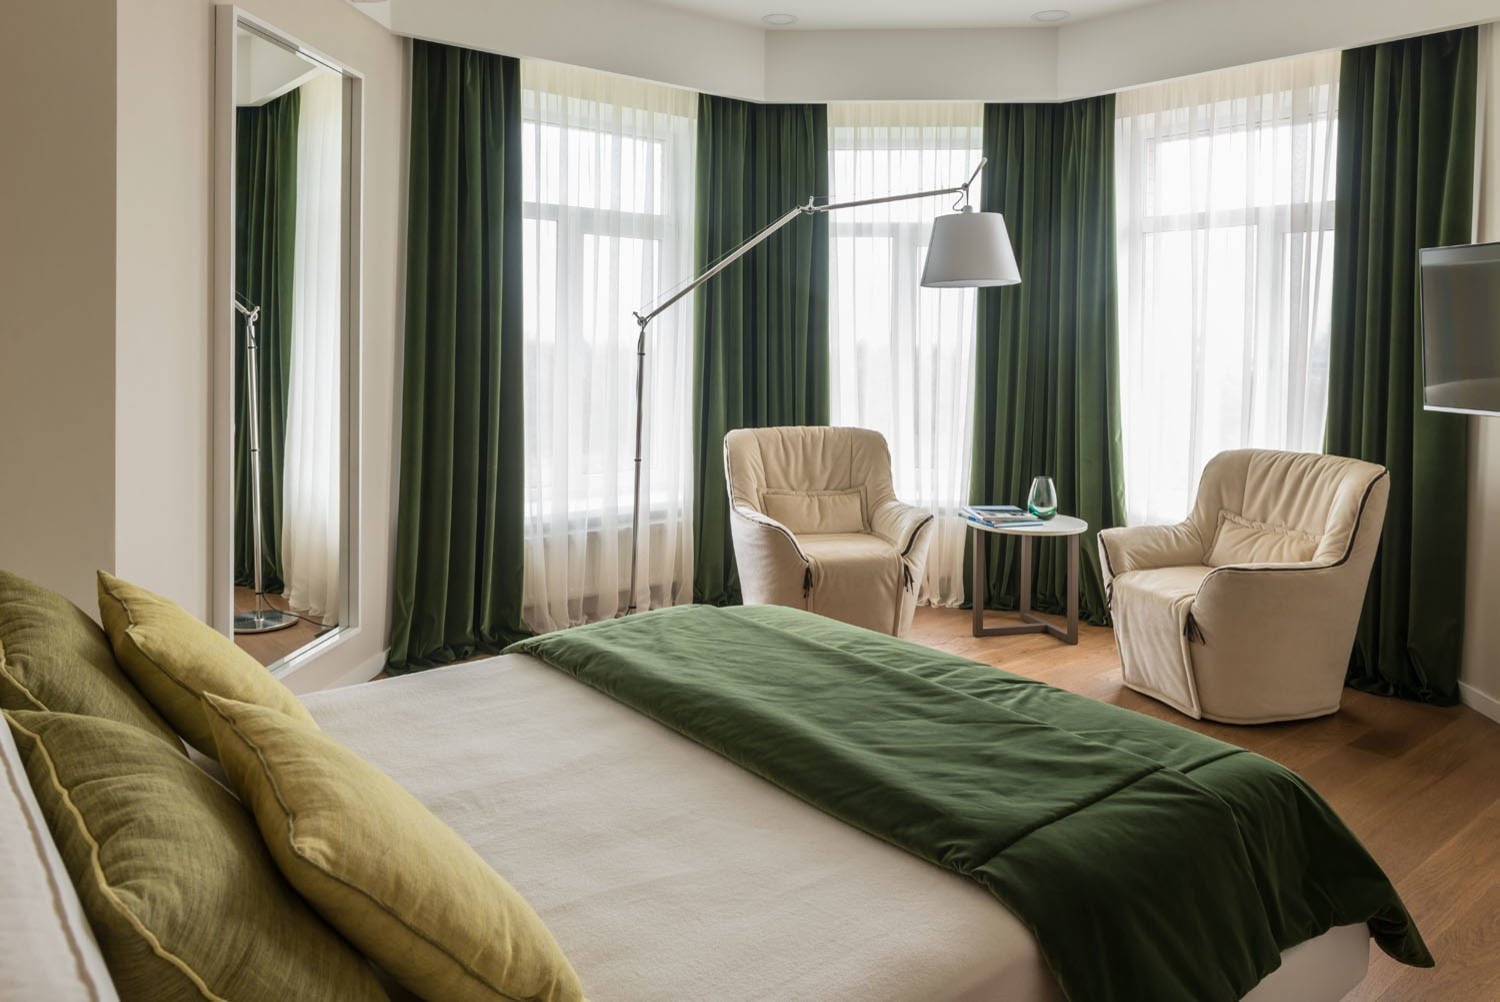 Trang trí nội thất khách sạn bằng rèm voan